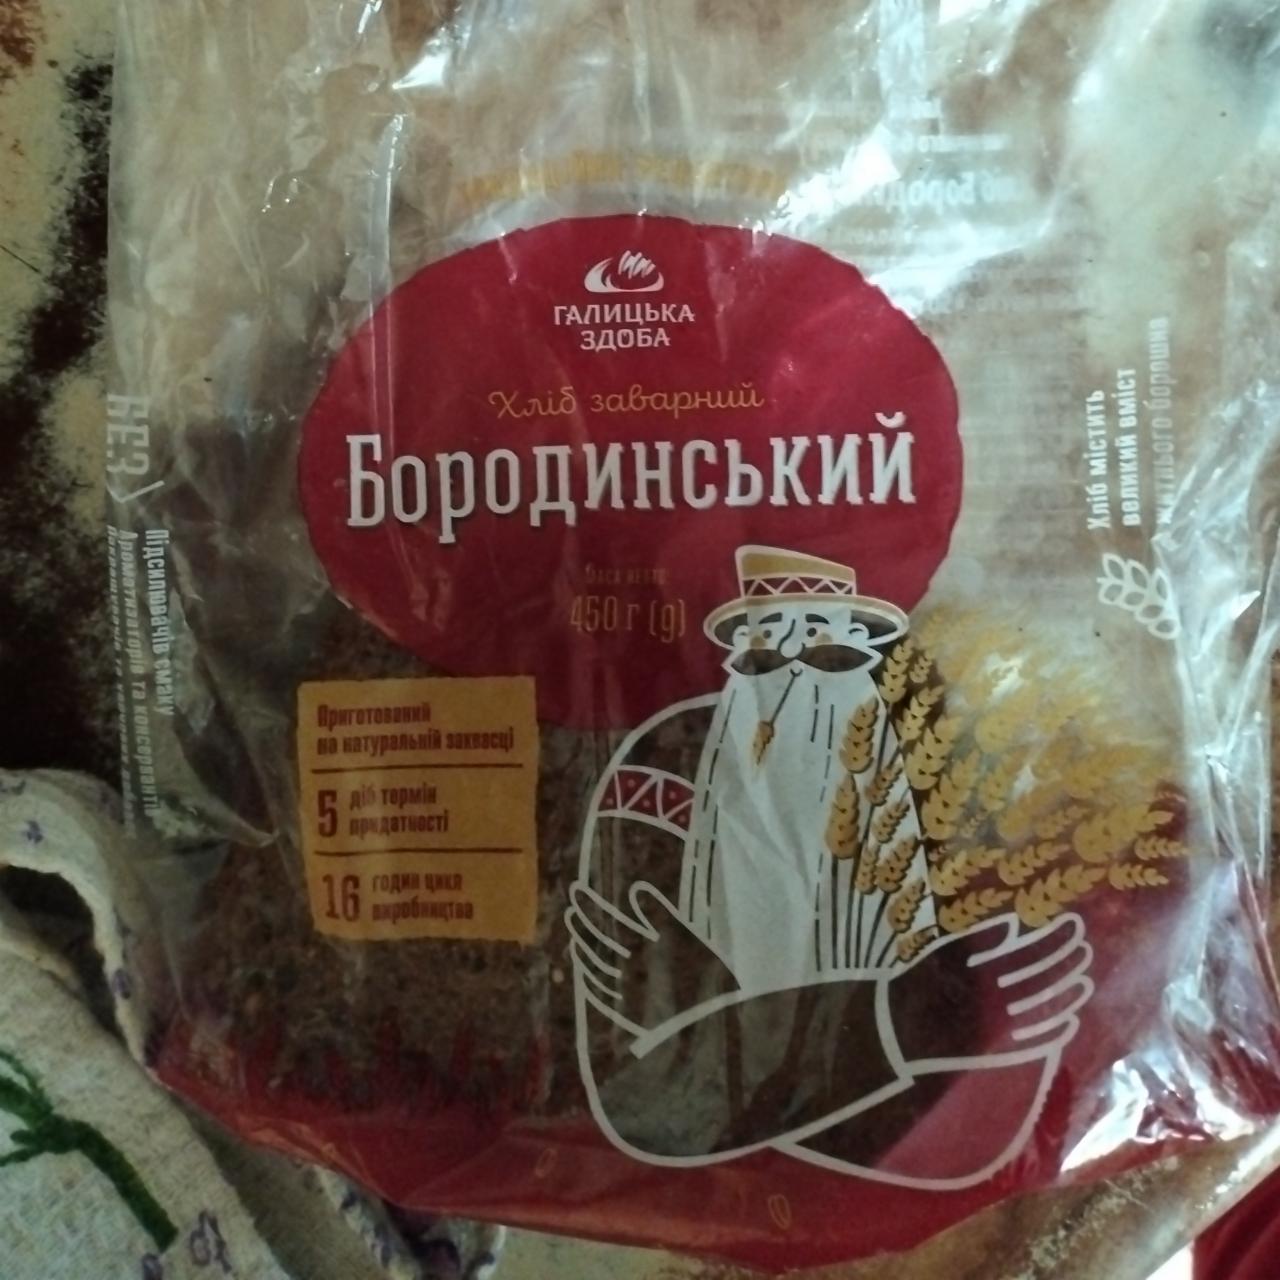 Фото - Хліб заварний Бородинський Галицька Здоба